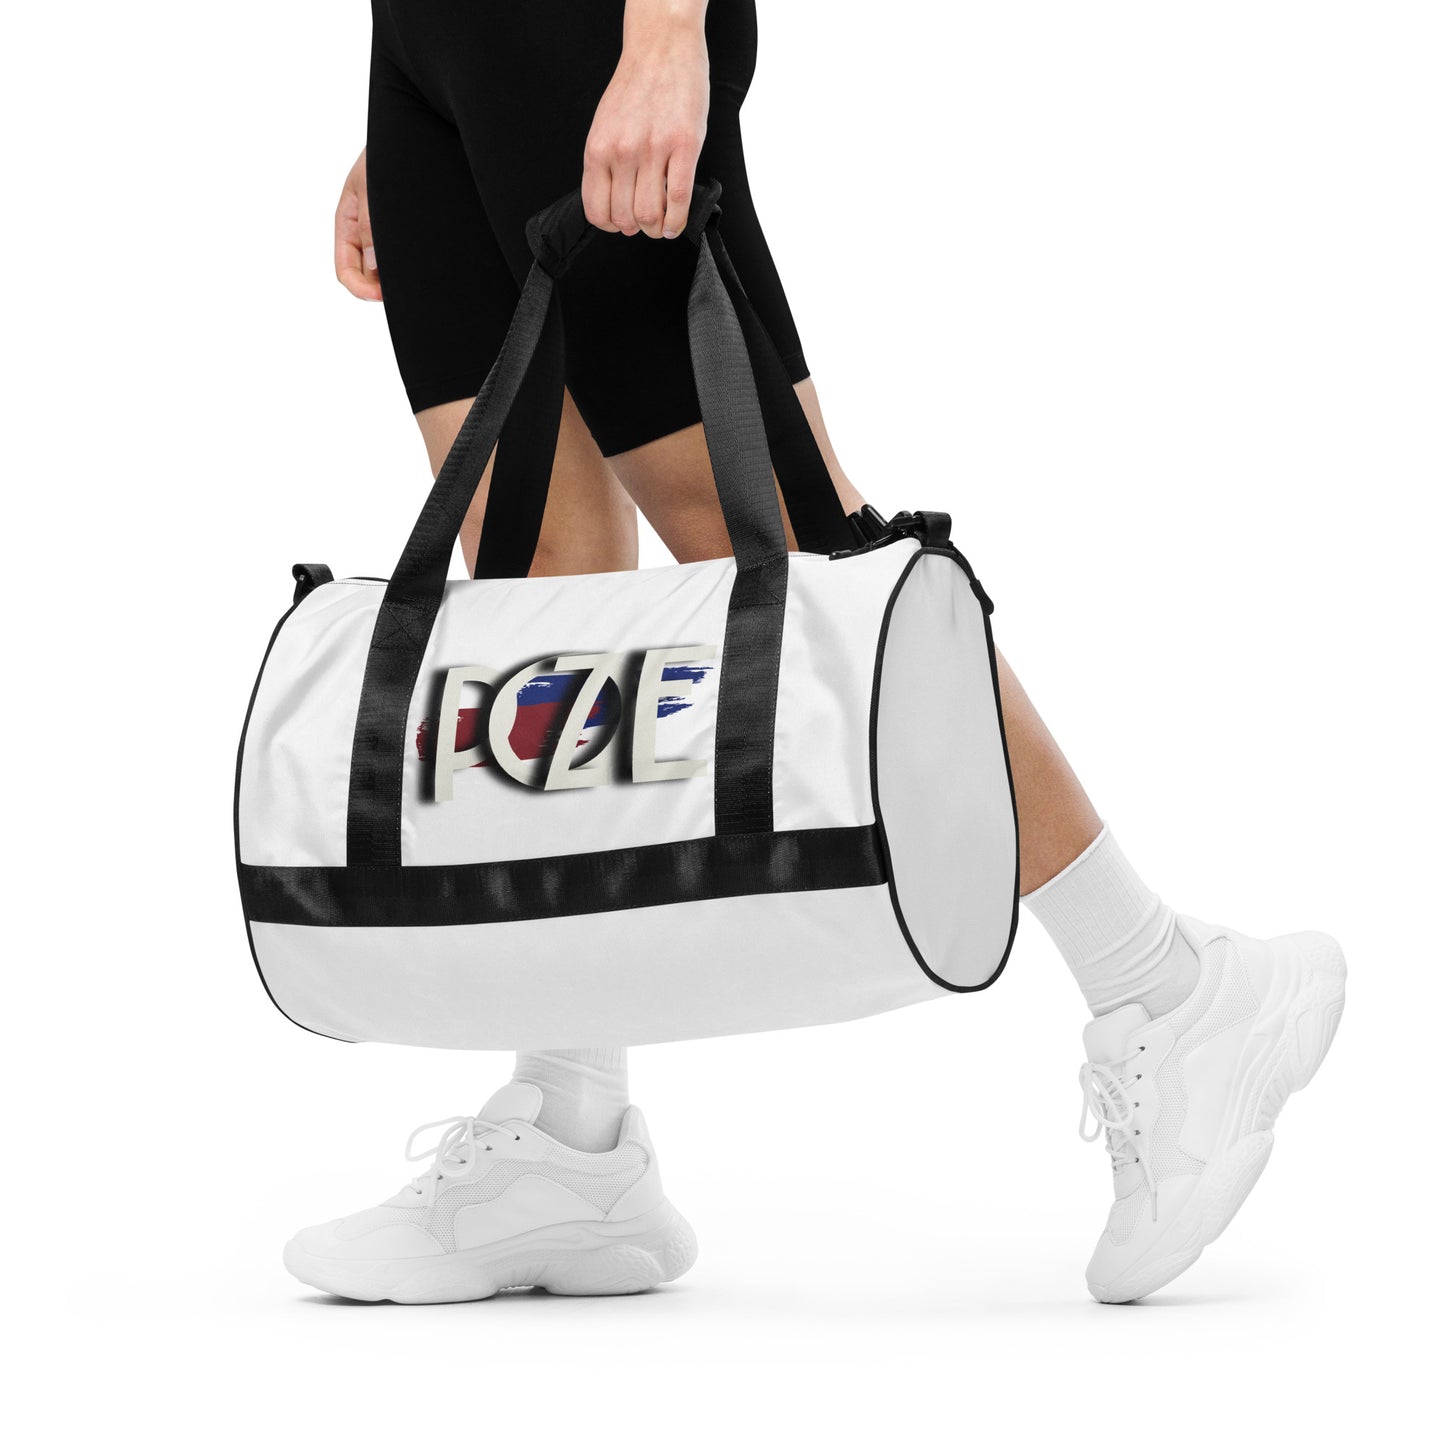 POZE Cool gym bag